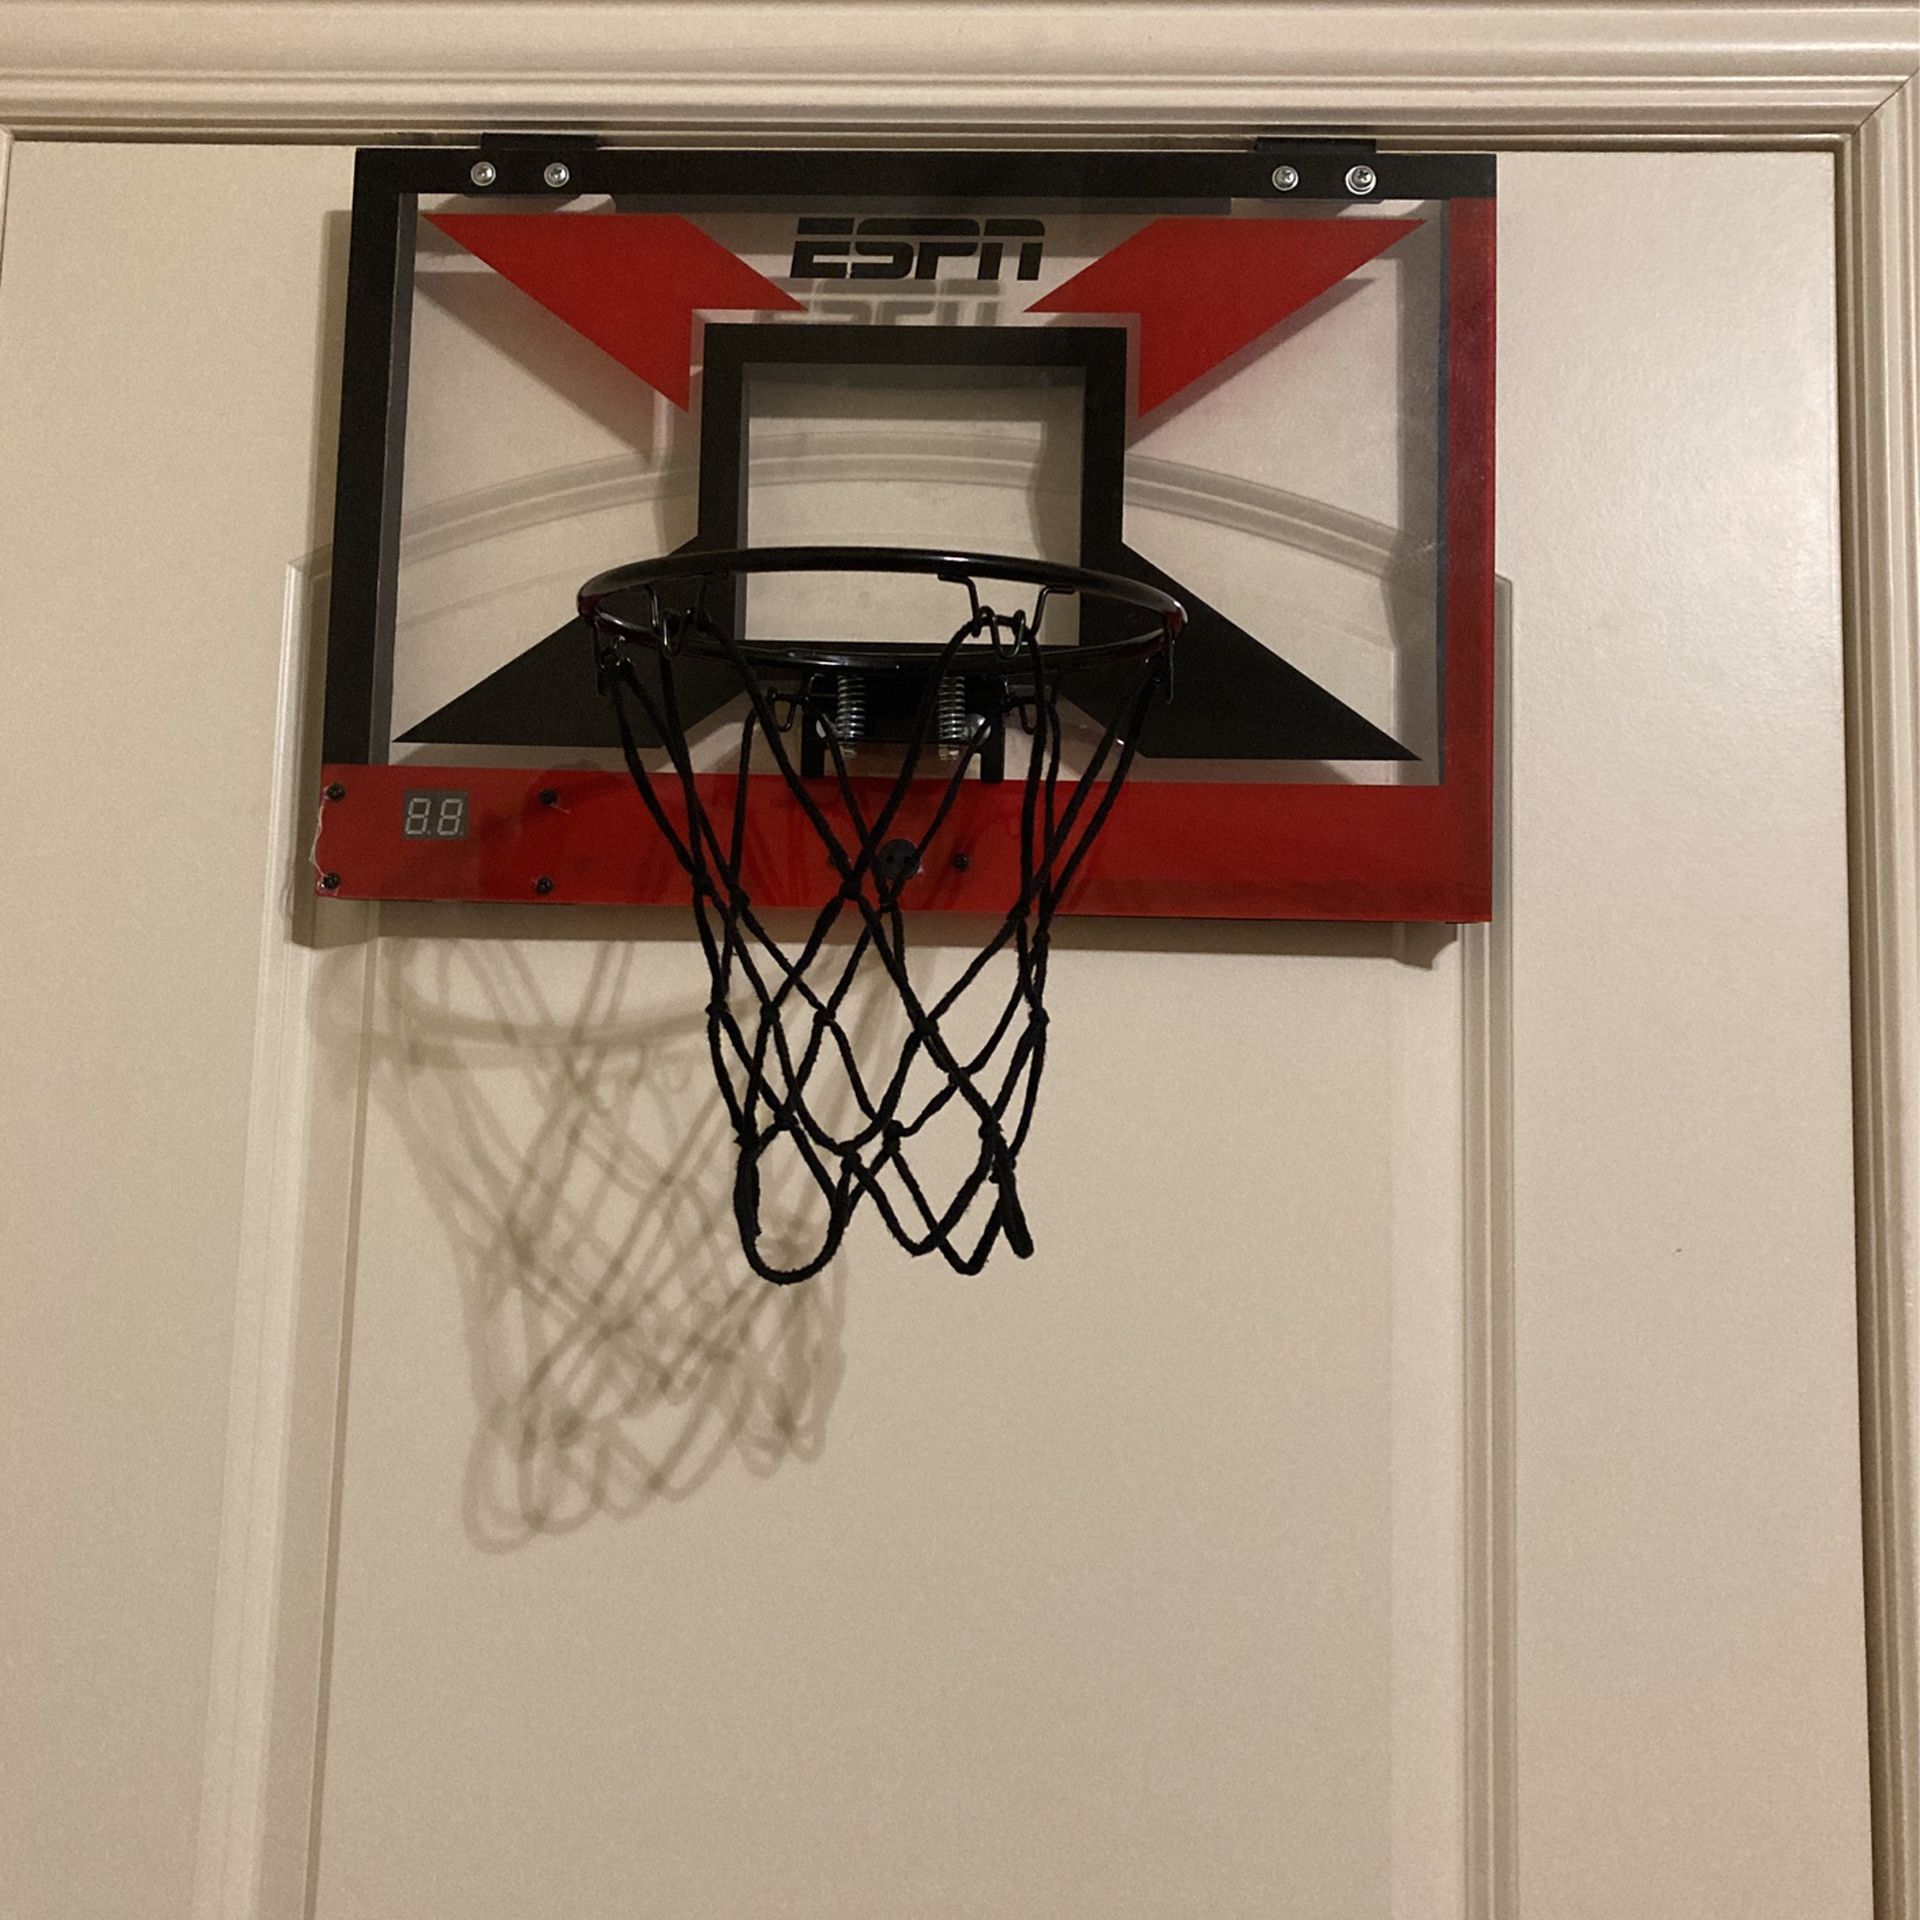 Hang Over The Door Mini Basketball Hoop